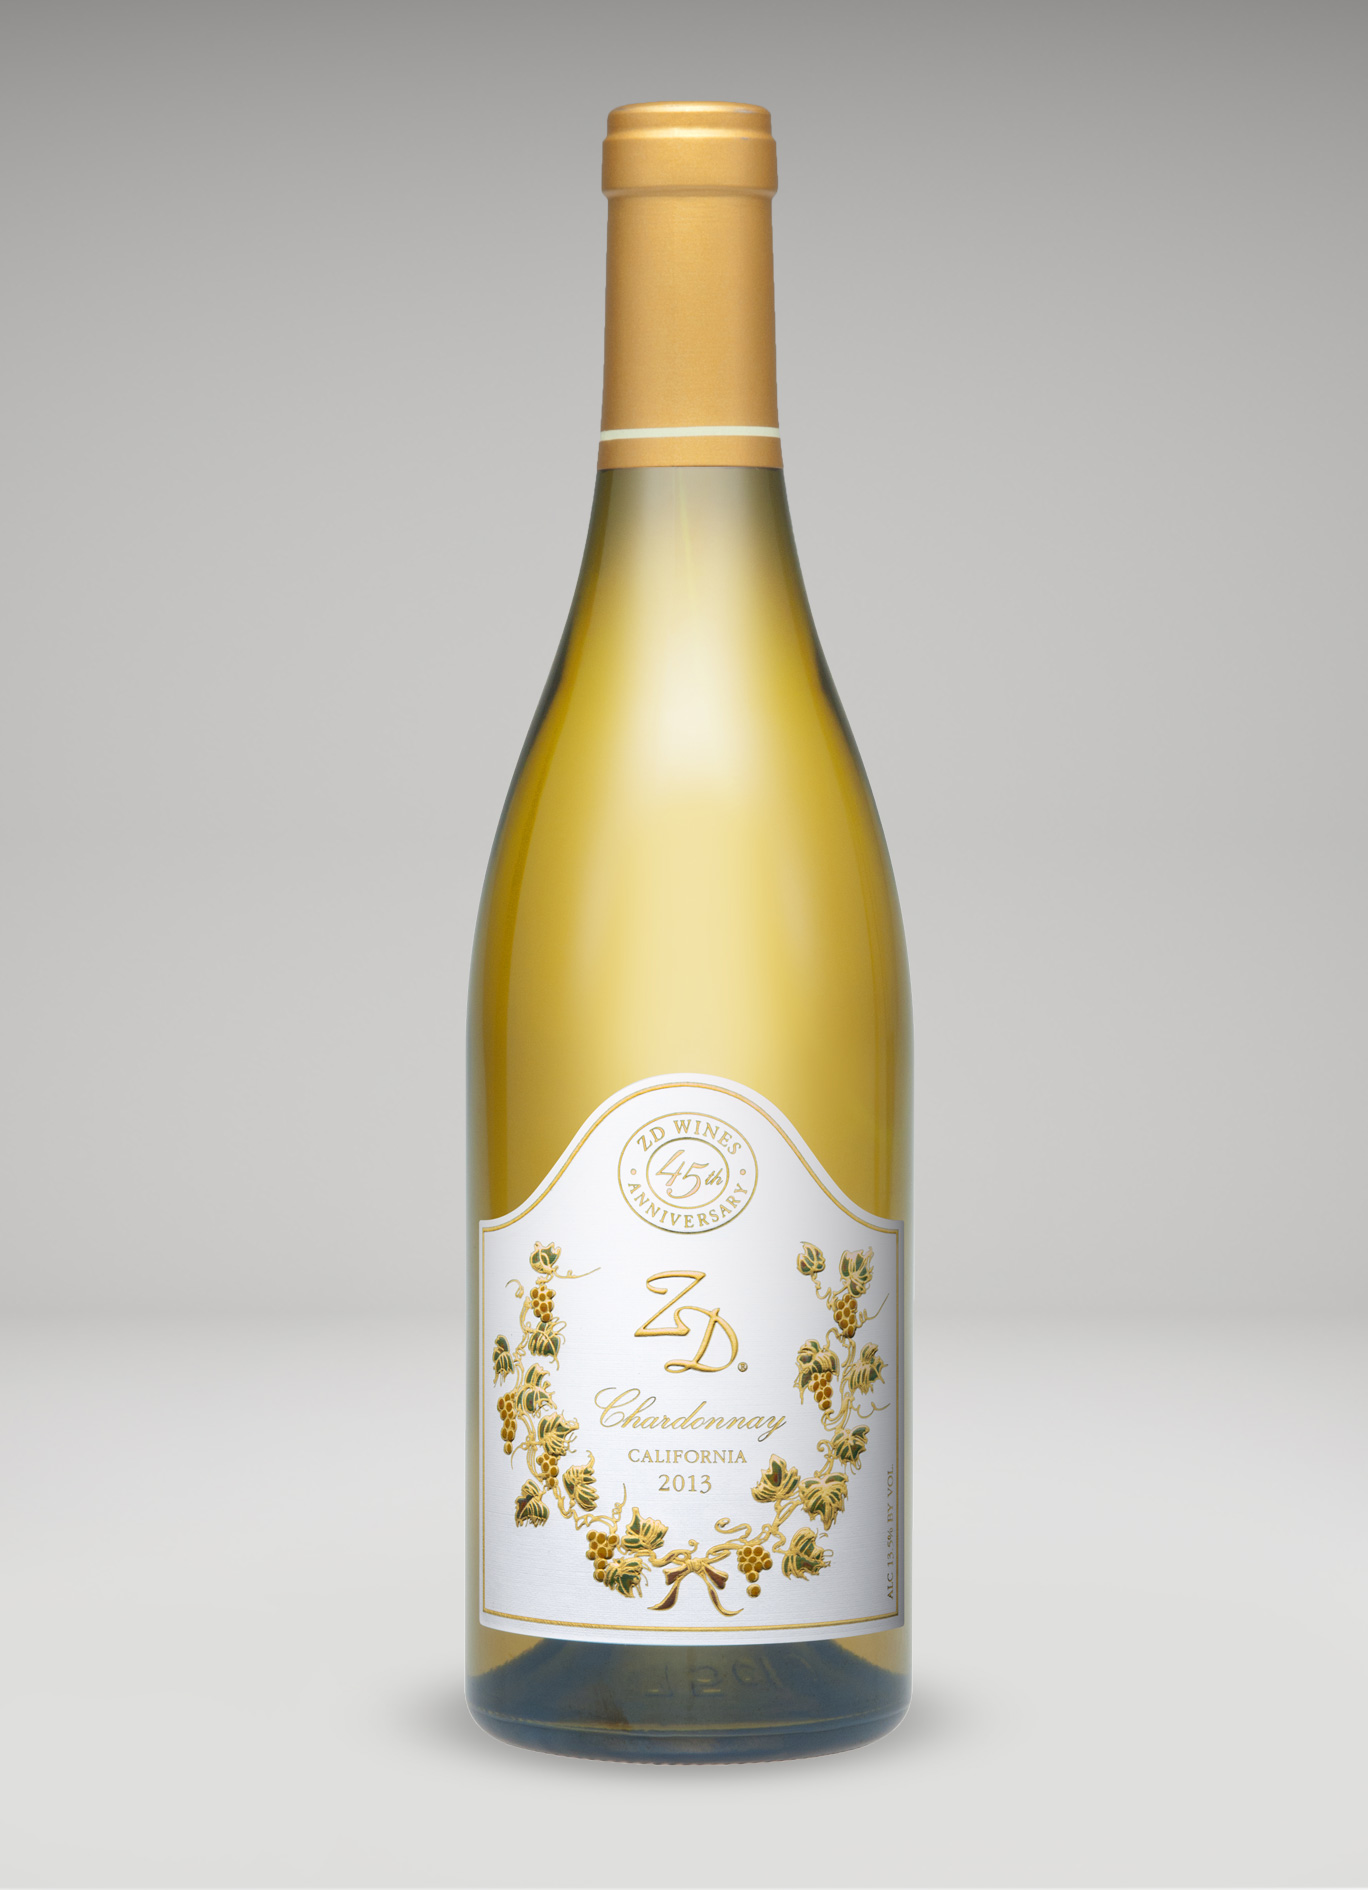 A bottle of 2013 ZD Chardonnay, CA